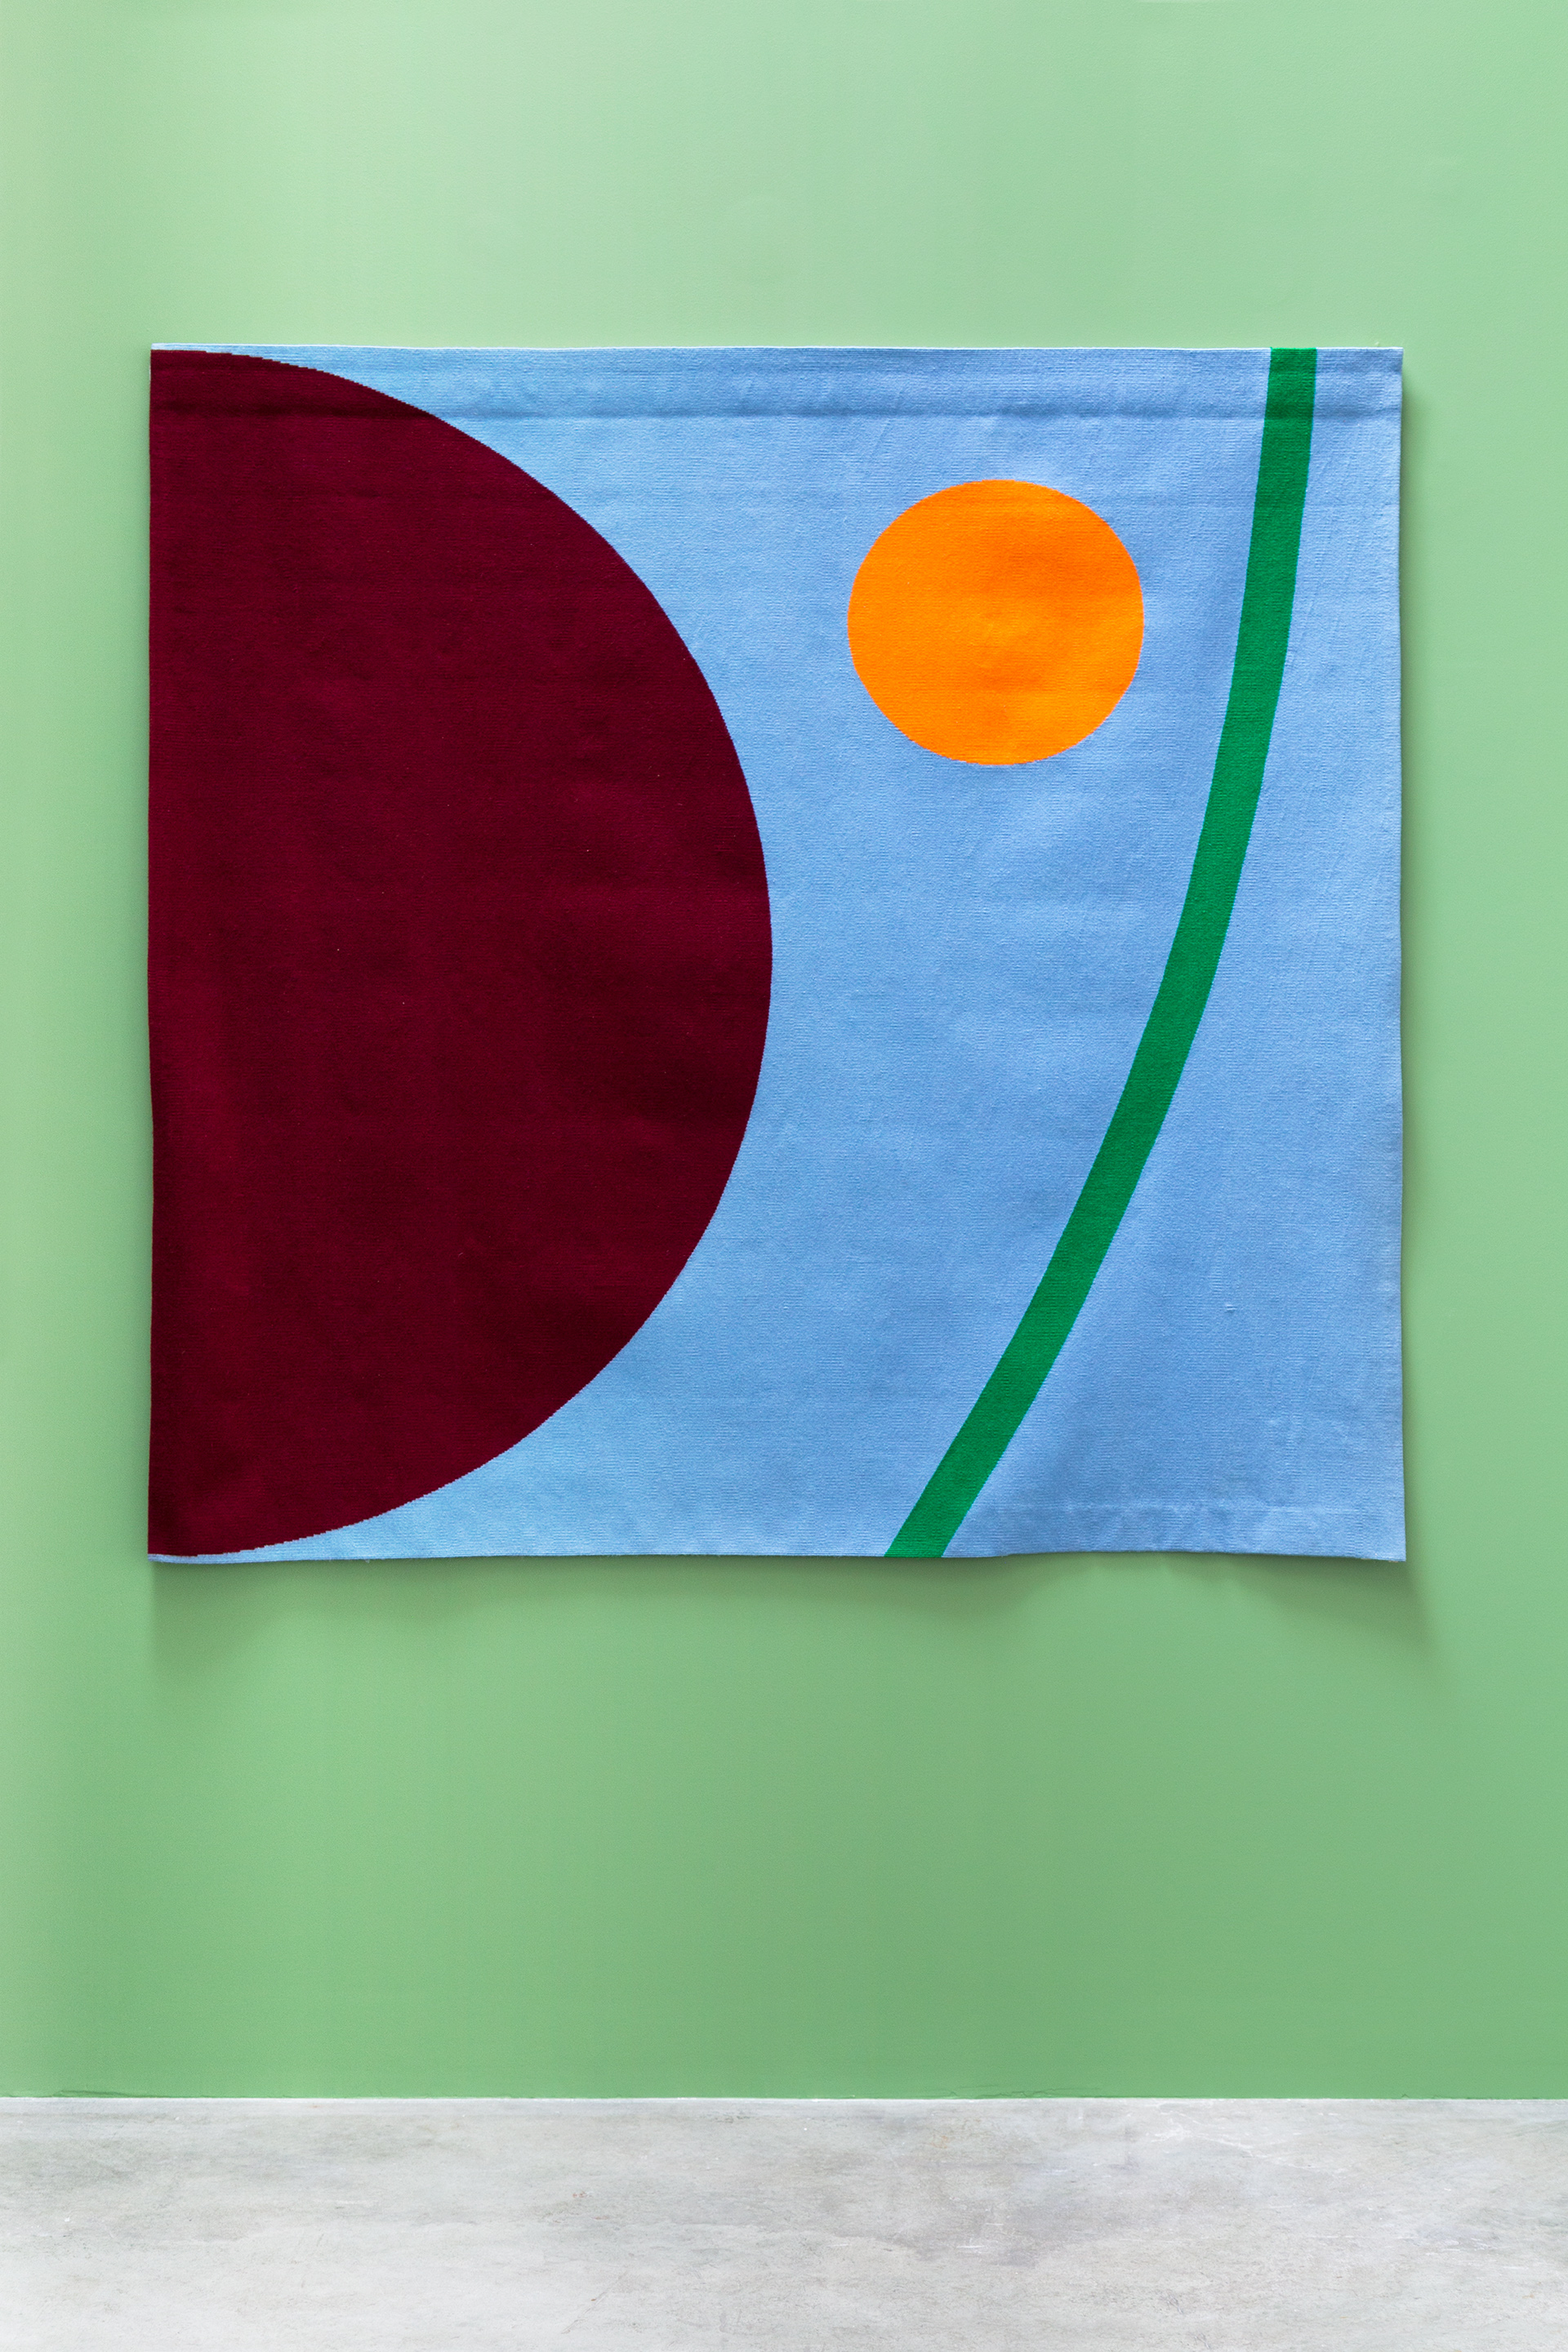 Textiles

Alexander Liberman, Number 41, Basse-lisse, 158 x 160 cm

photographie ©EmilieVialet